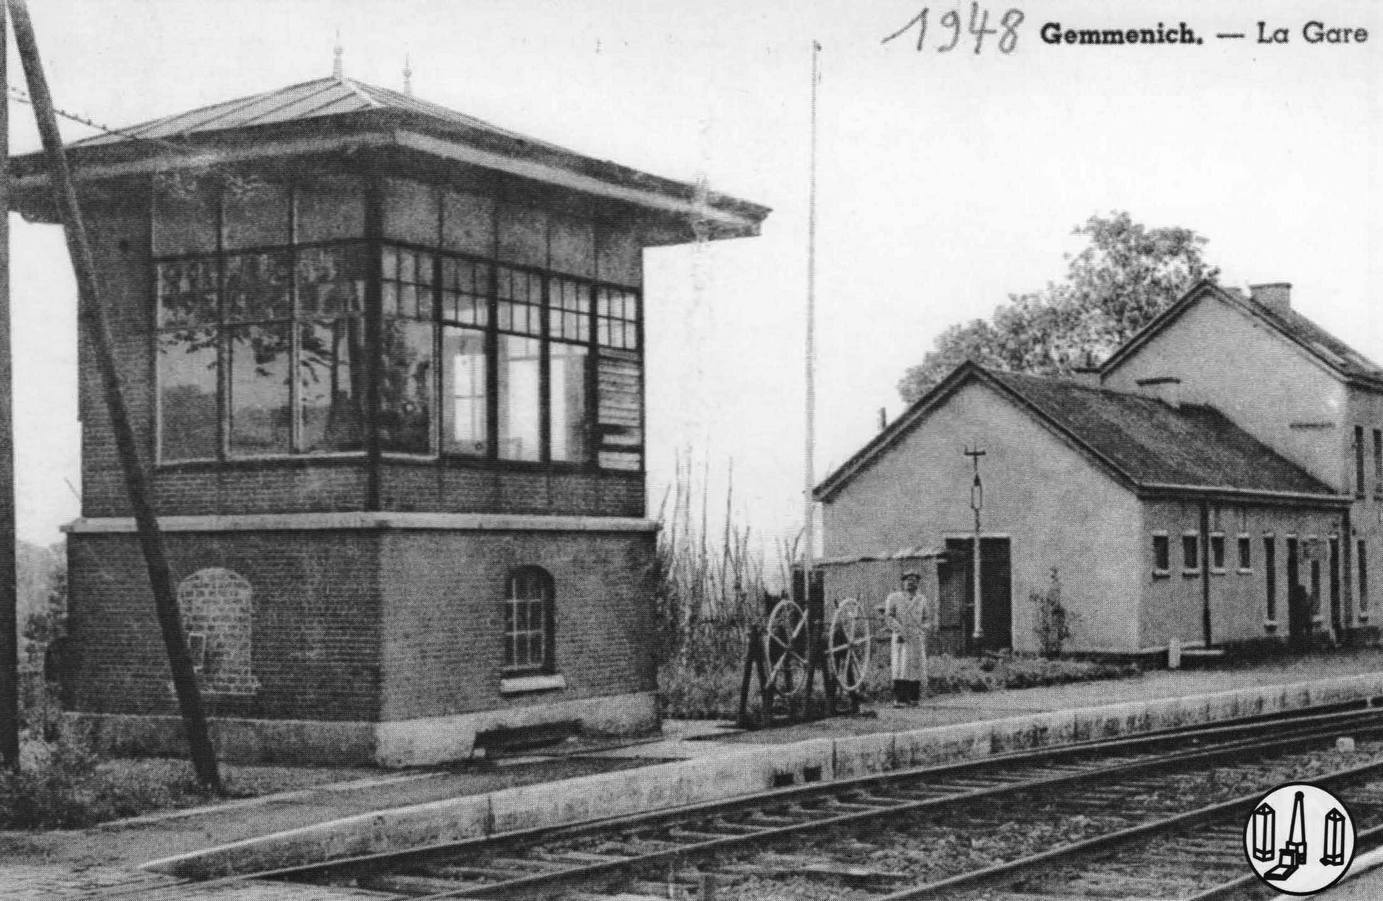 Station Gemmenich